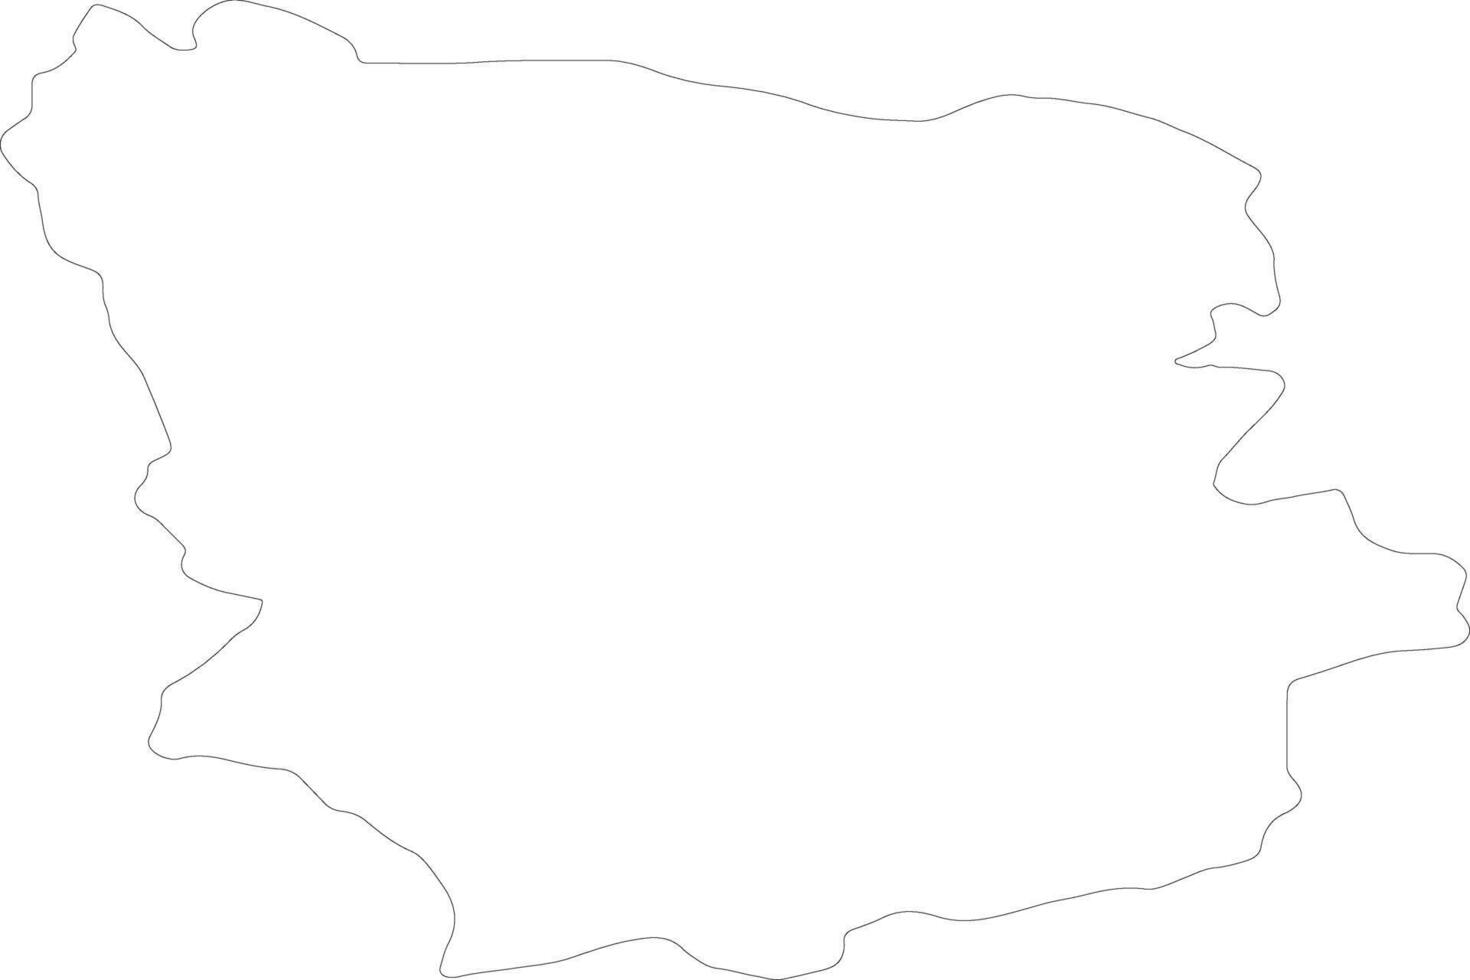 laane-viru Estland schets kaart vector